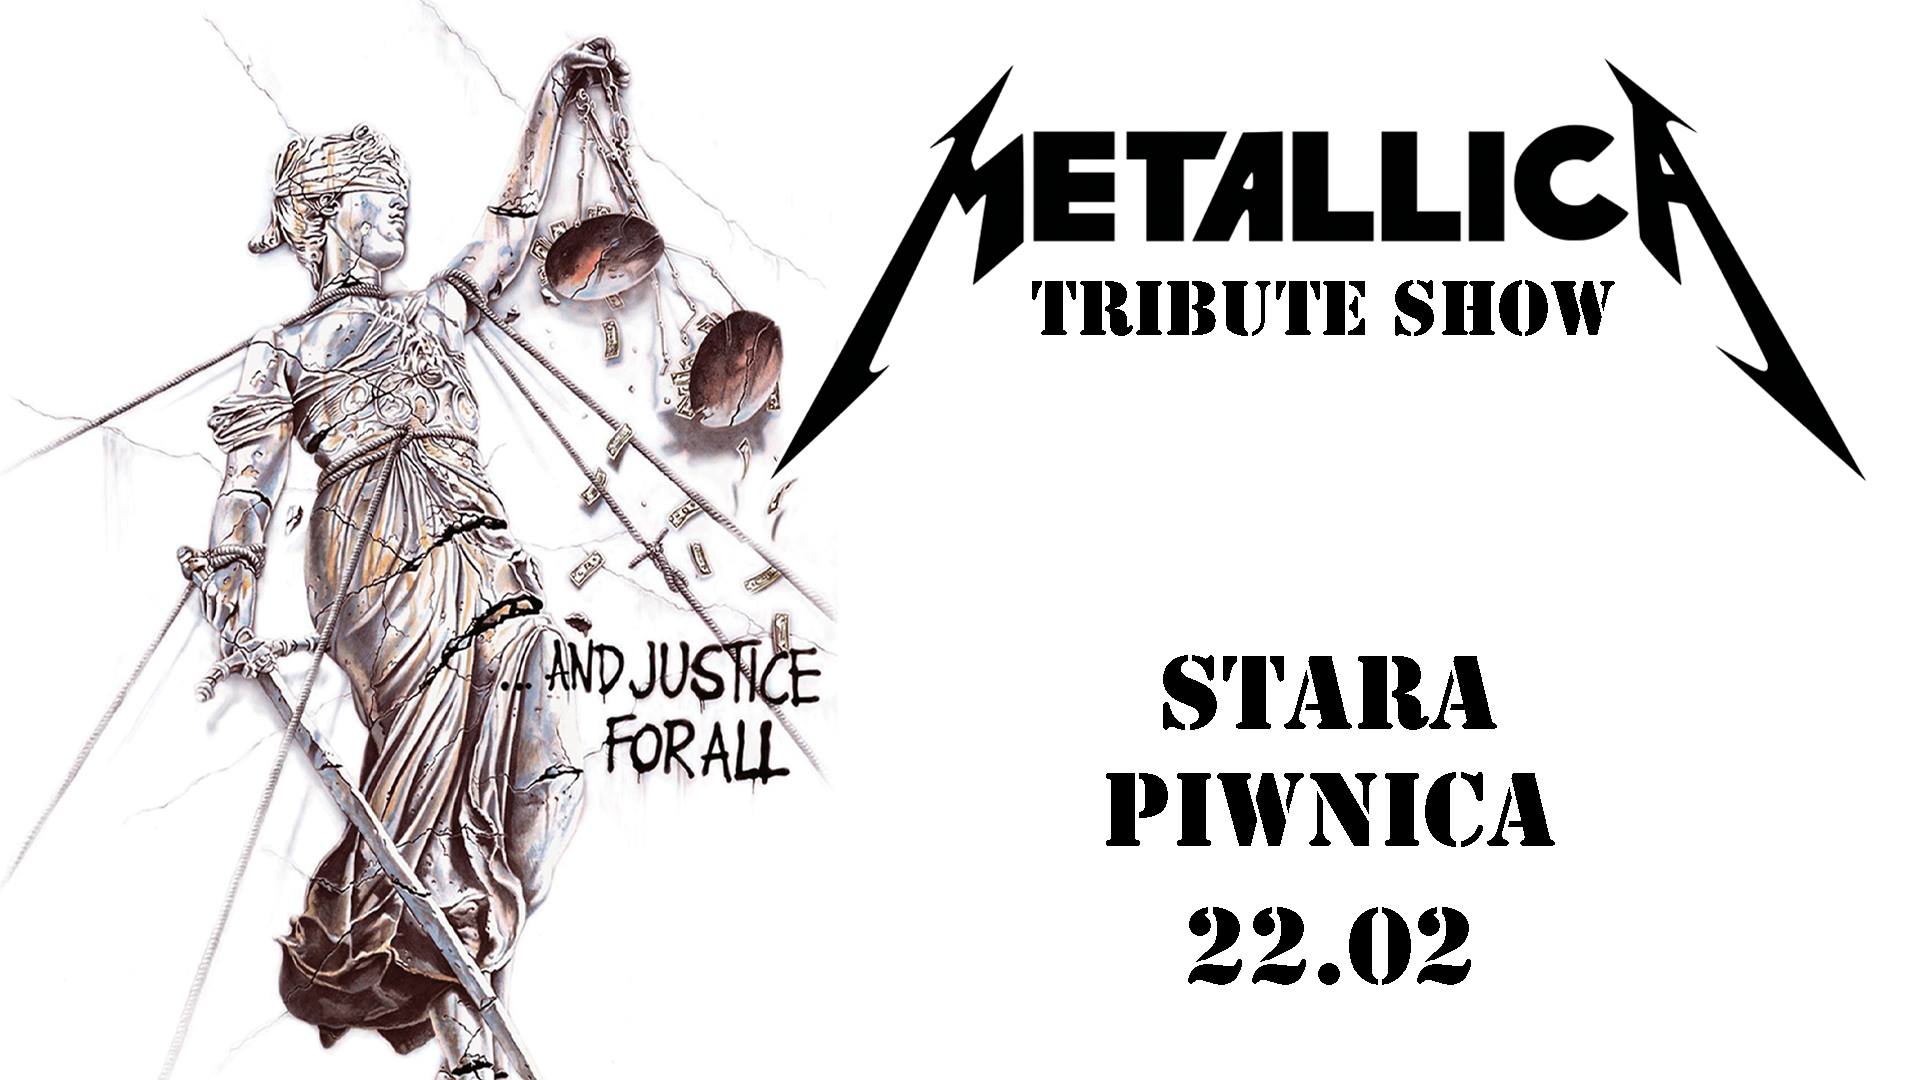 Najlepszy na świecie Metallica tribute band powraca!